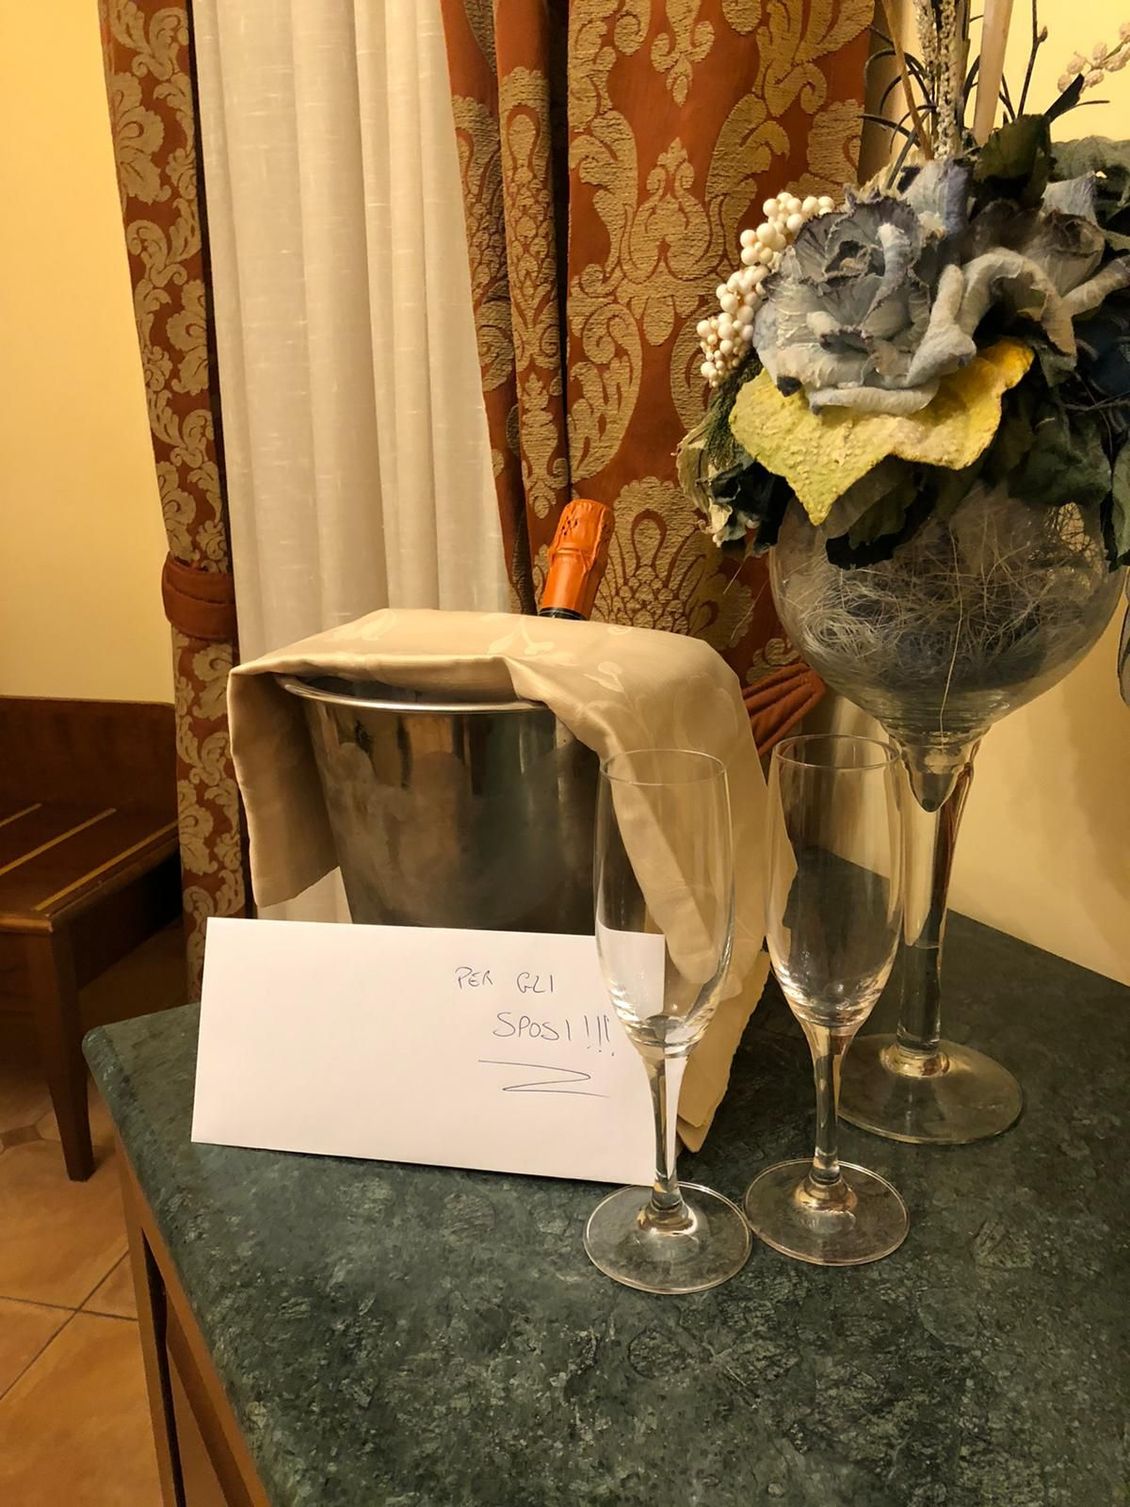 Camera d'albergo con spumante per luna di miele in uno degli alberghi economici a Taormina